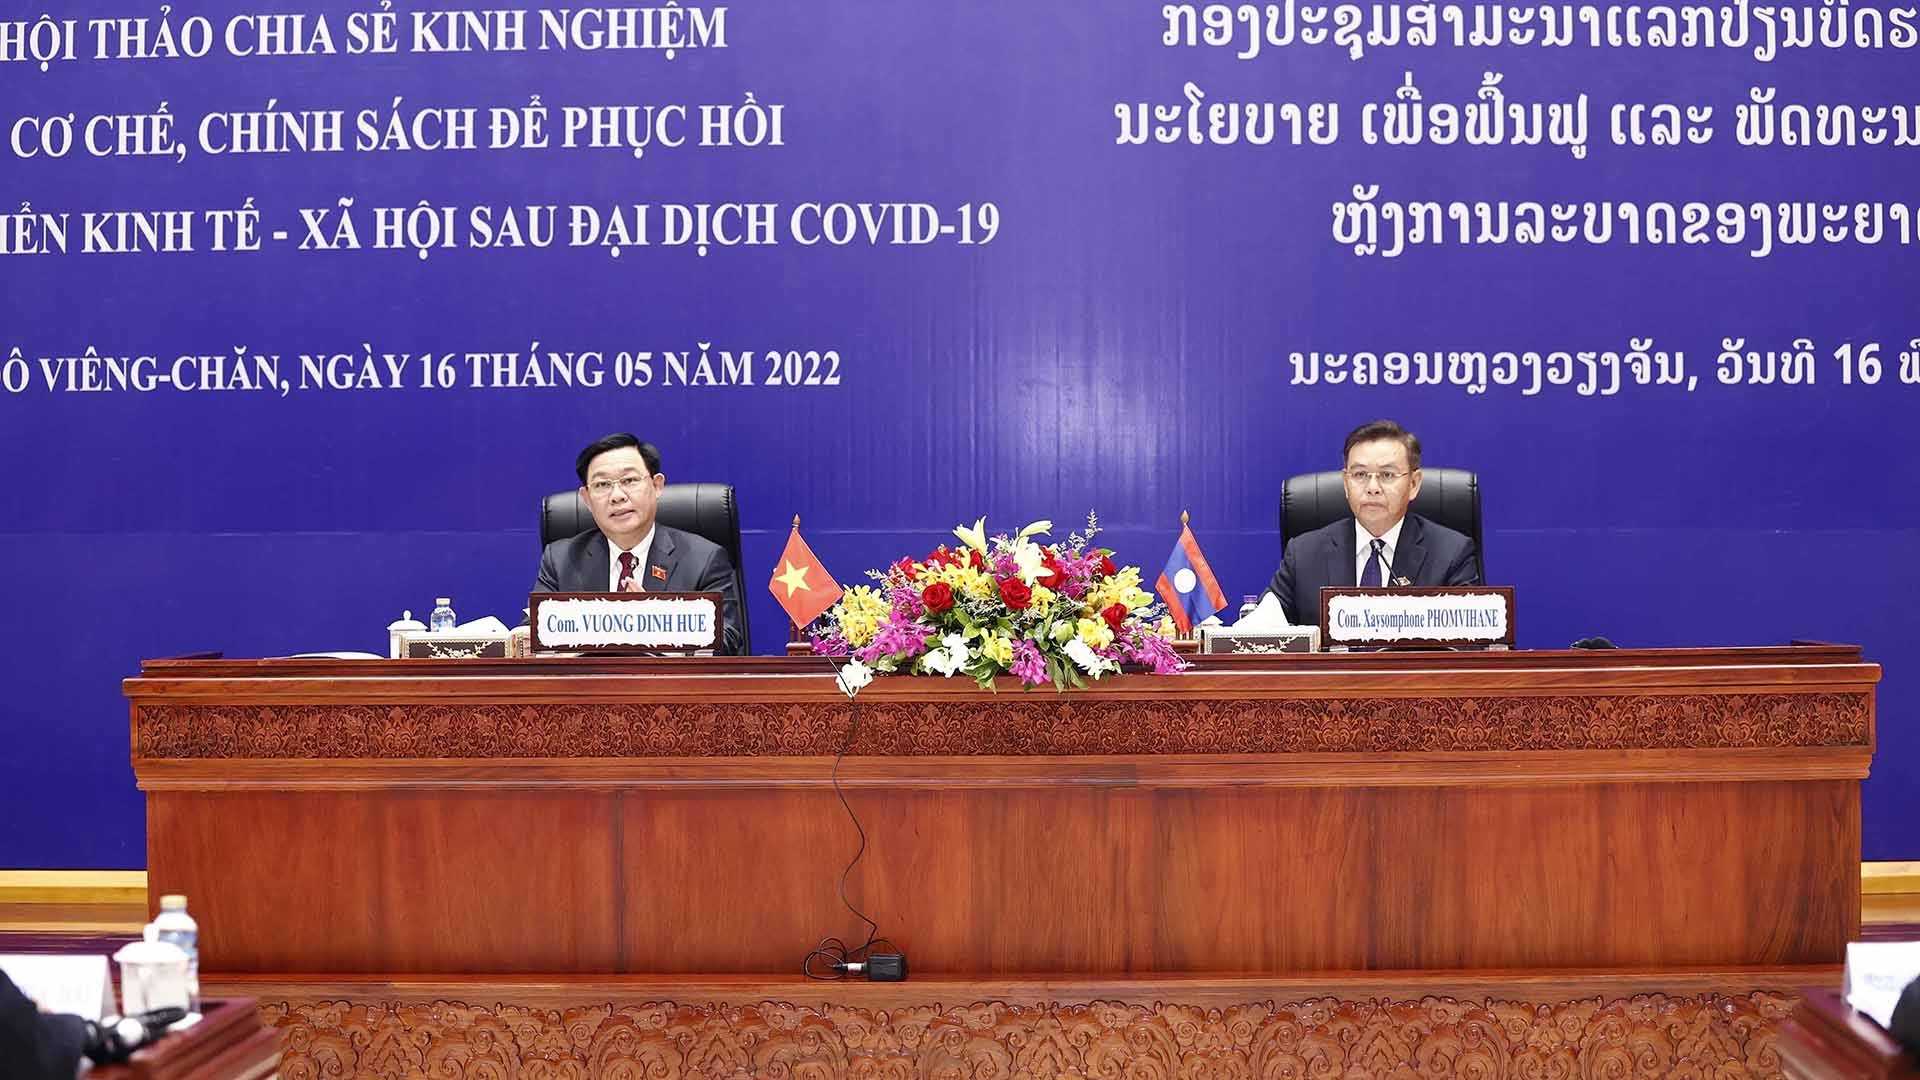 Chủ tịch Quốc hội Vương Đình Huệ và Chủ tịch Quốc hội Lào Saysomphone Phomvihane đồng chủ trì Hội thảo chia sẻ kinh nghiệm về cơ chế, chính sách để phục hồi và phát triển kinh tế-xã hội sau đại dịch Covid-19. (Nguồn: TTXVN)